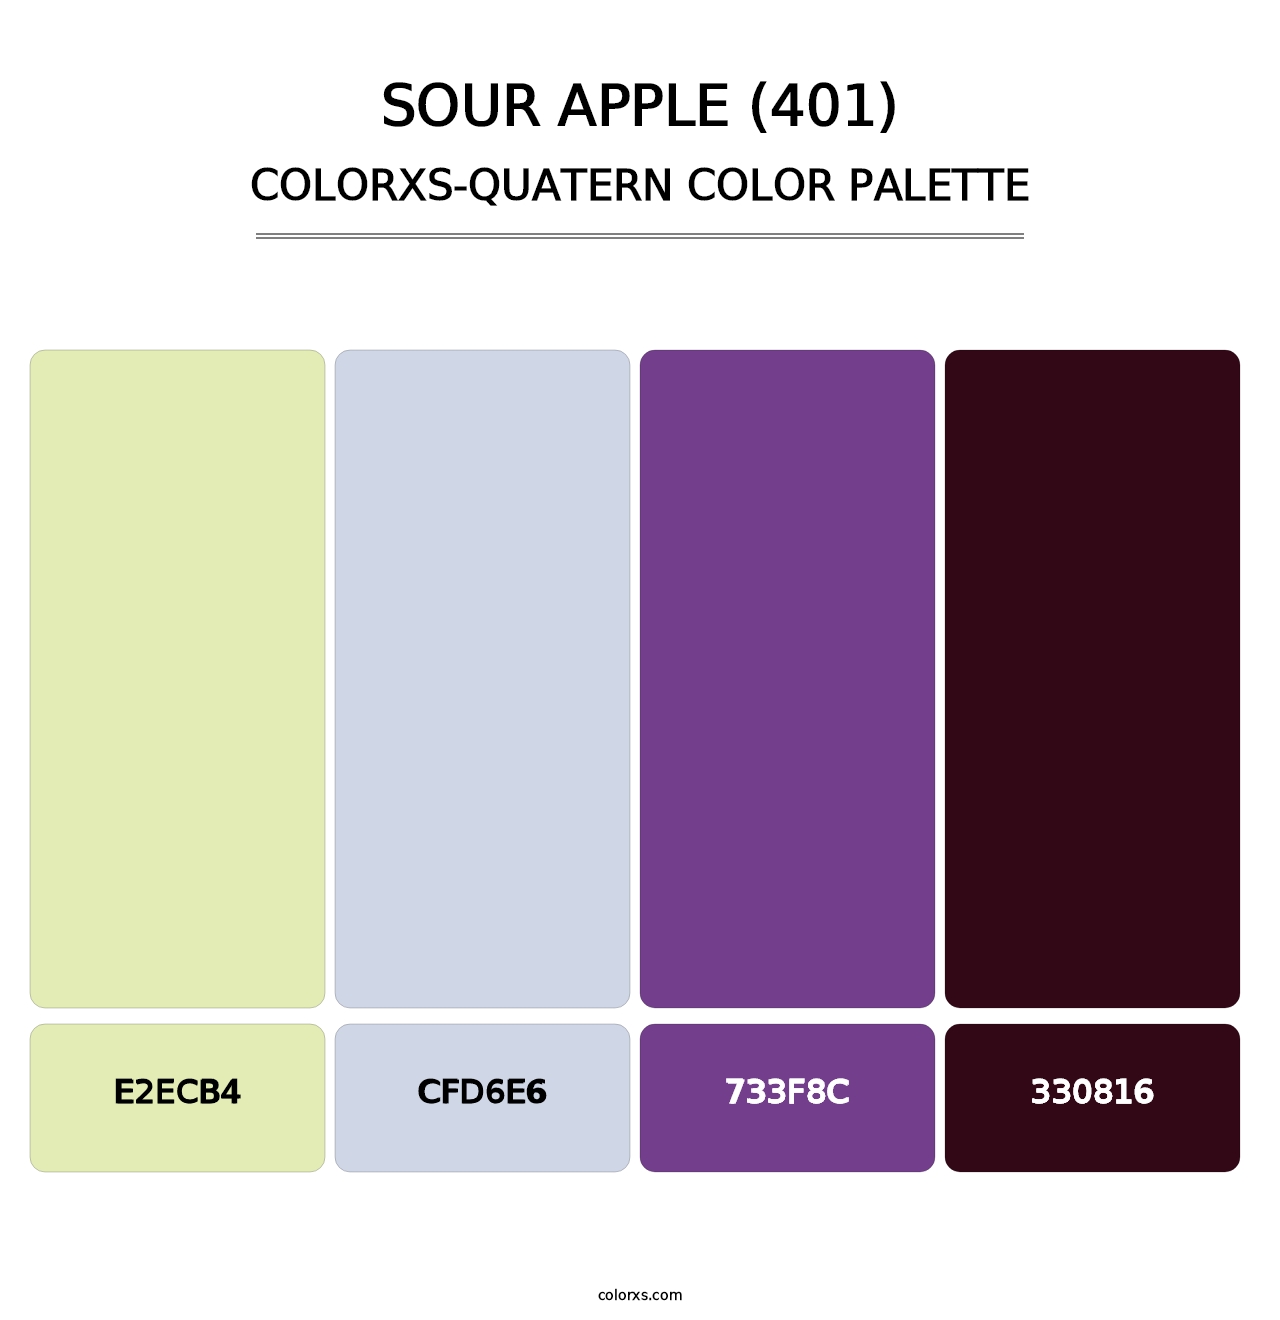 Sour Apple (401) - Colorxs Quatern Palette